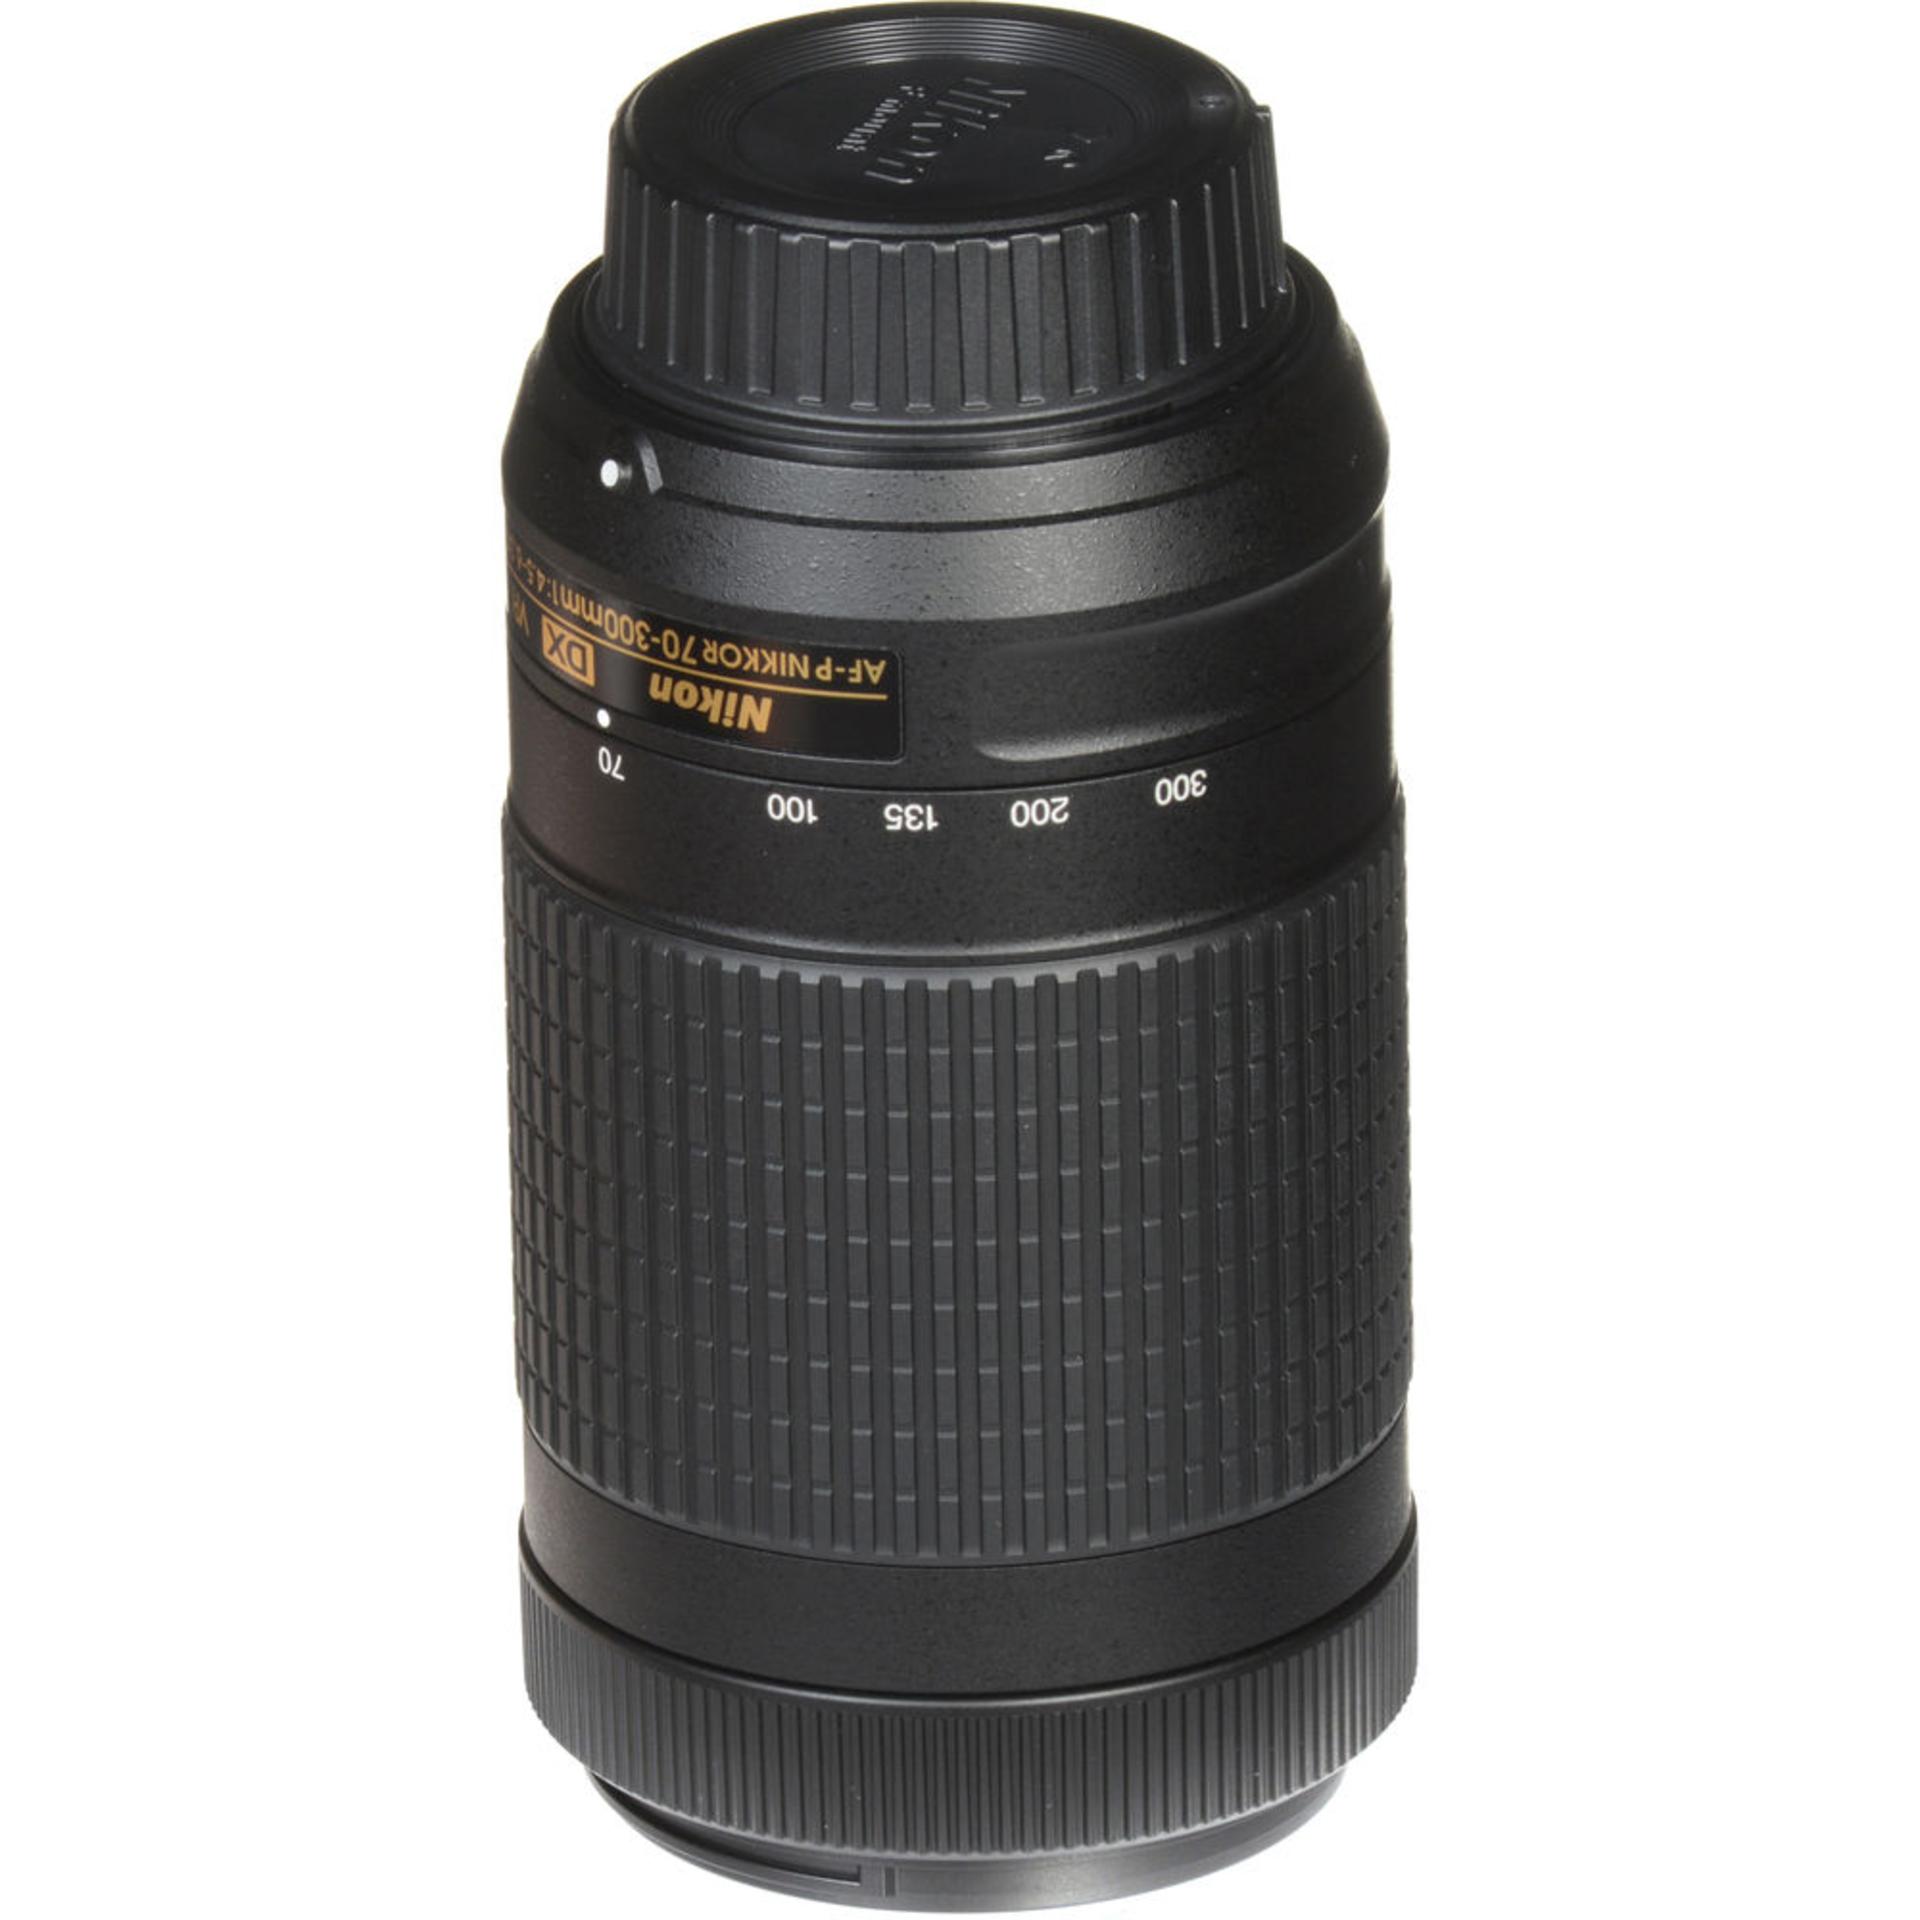 Nikon AF-P DX Nikkor 70-300mm F4.5-6.3G VR